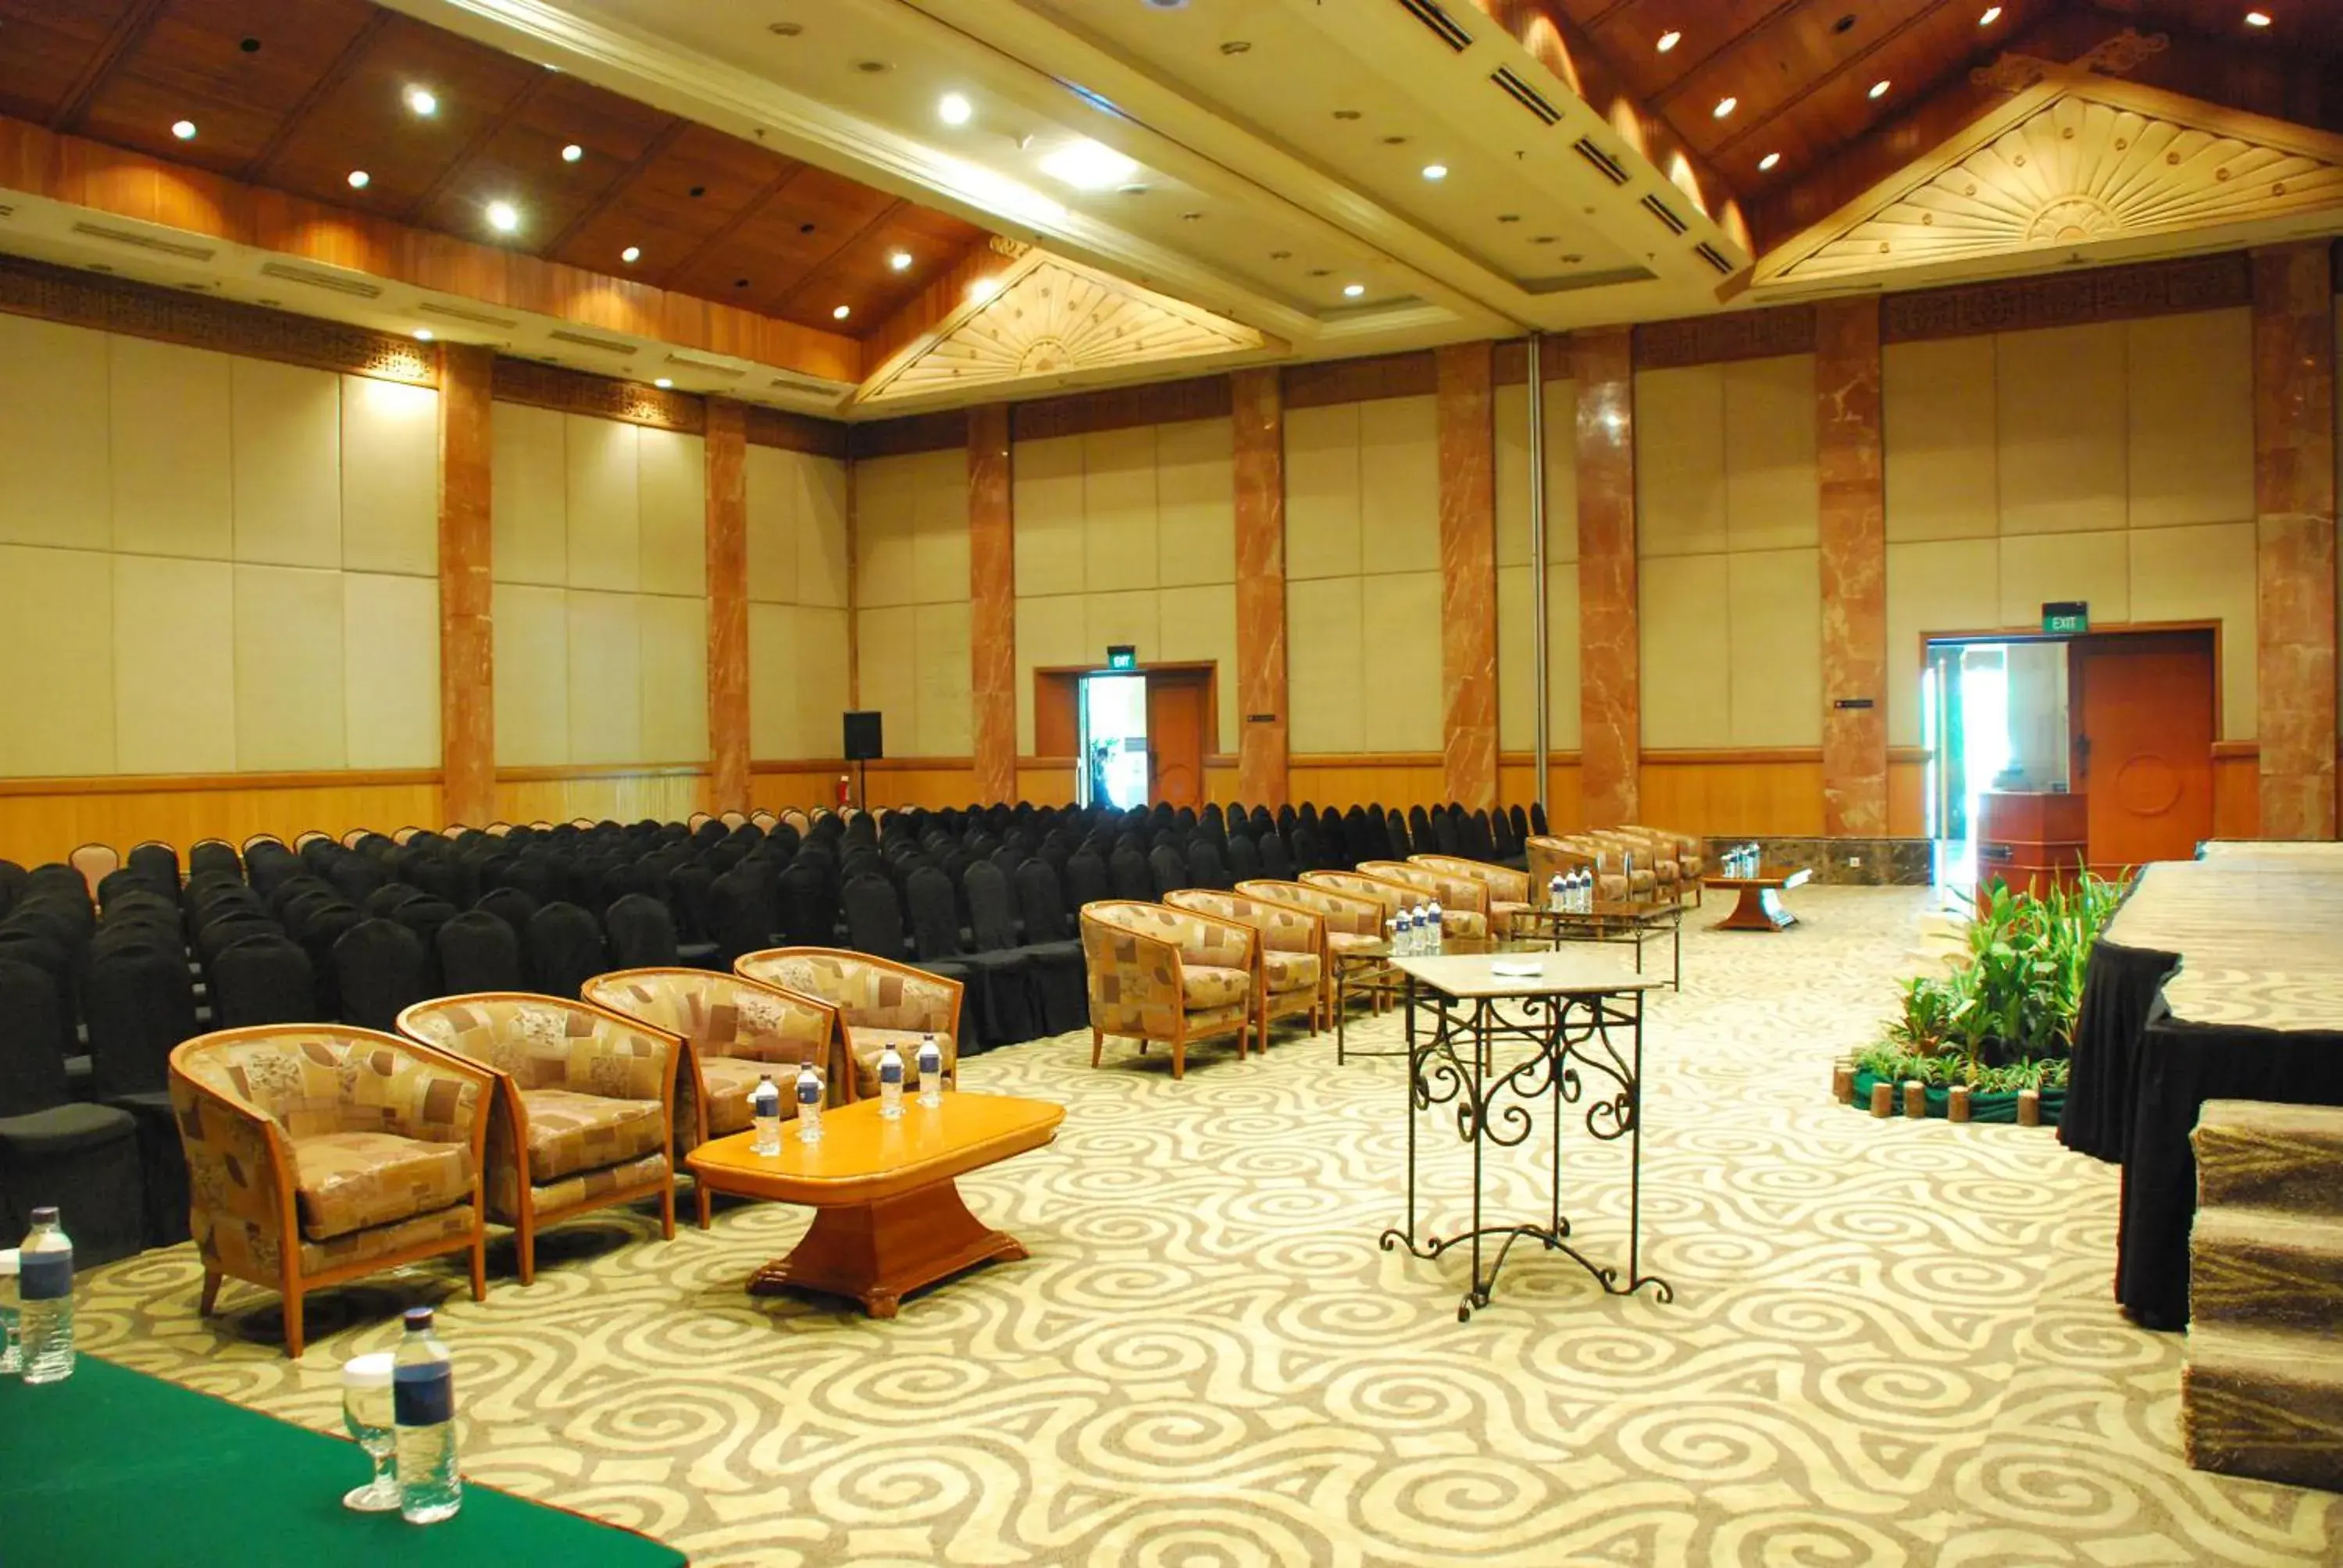 Meeting/conference room in Hotel Aryaduta Pekanbaru